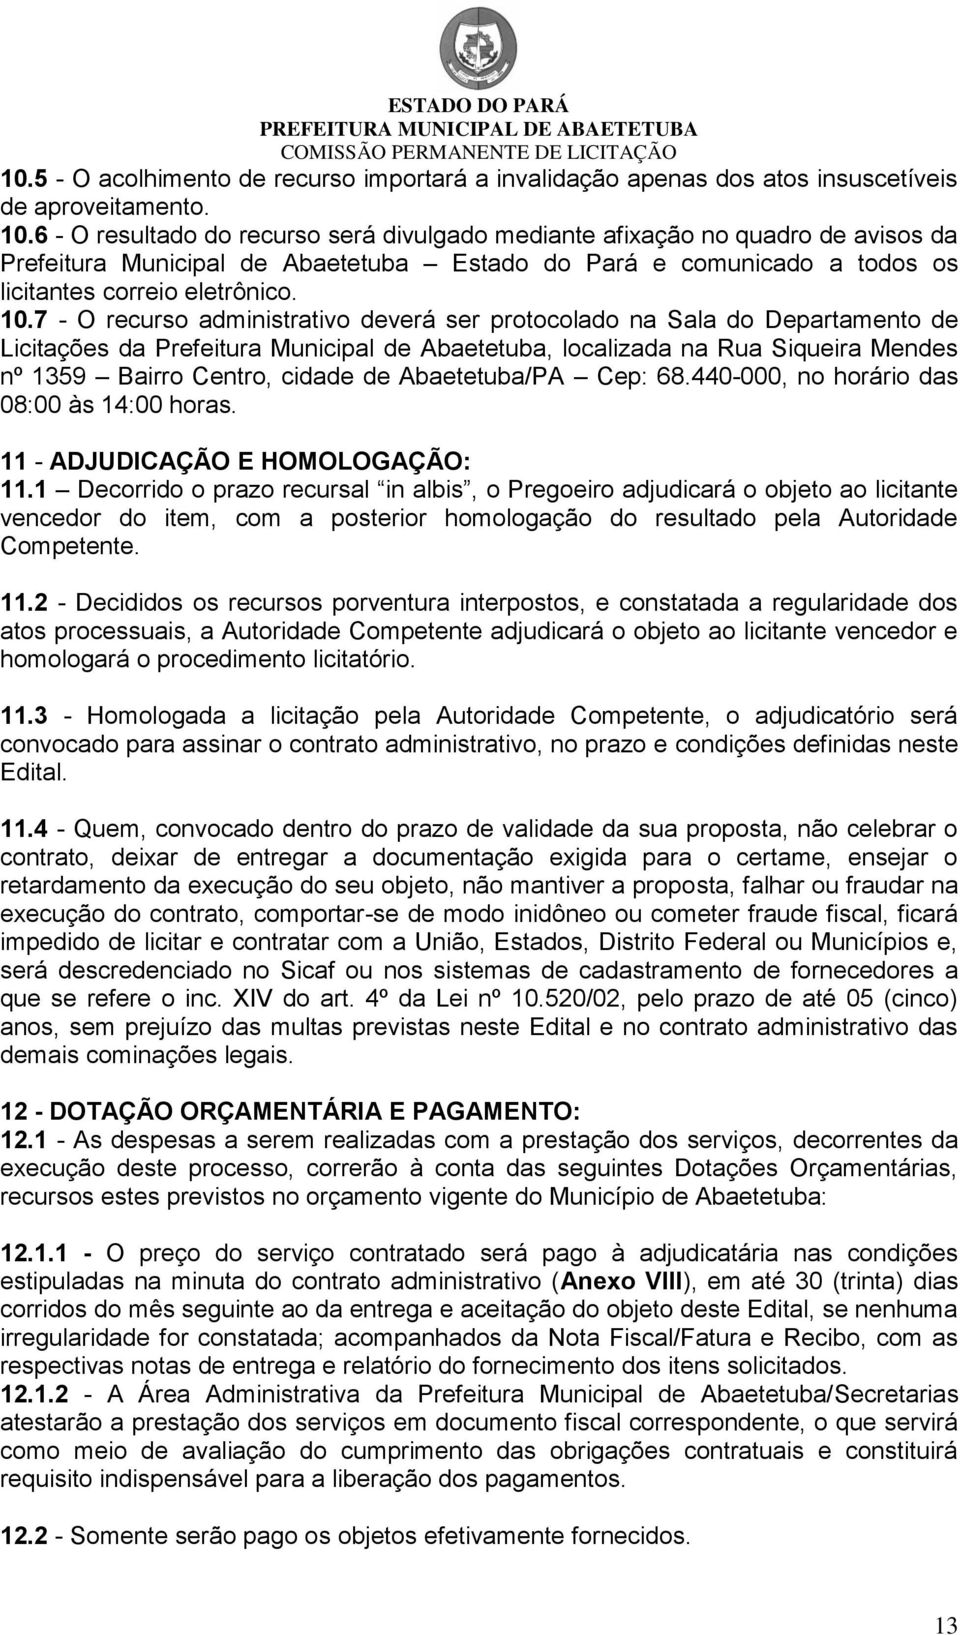 7 - O recurso administrativo deverá ser protocolado na Sala do Departamento de Licitações da Prefeitura Municipal de Abaetetuba, localizada na Rua Siqueira Mendes nº 1359 Bairro Centro, cidade de